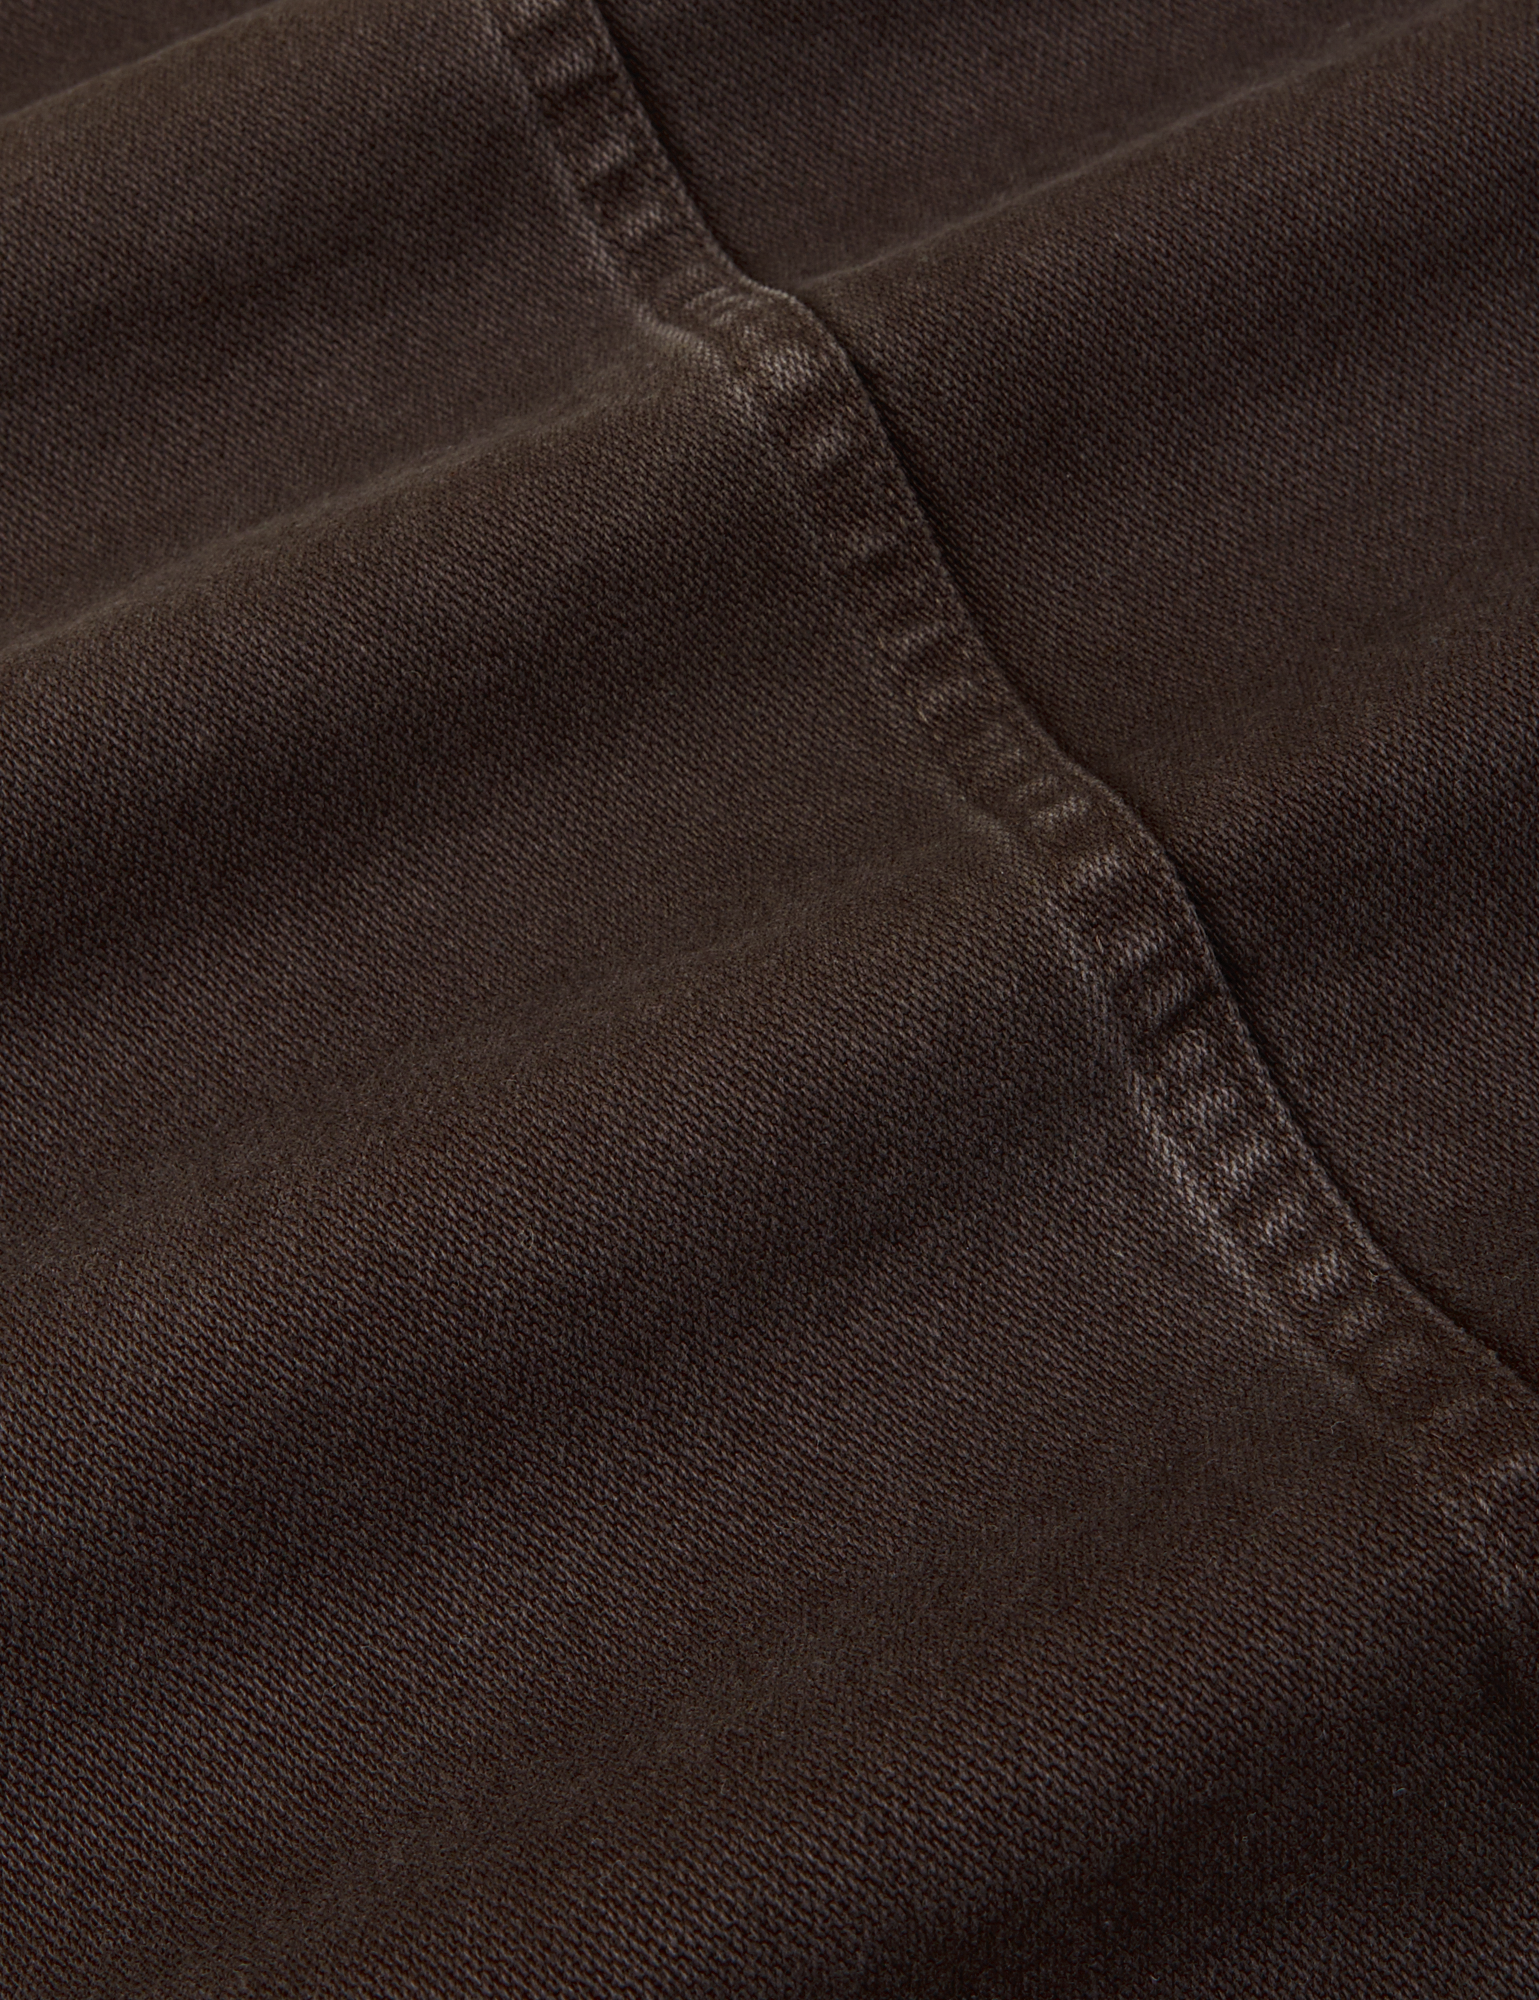 Denim Work Jacket in Espresso Brown fabric detail